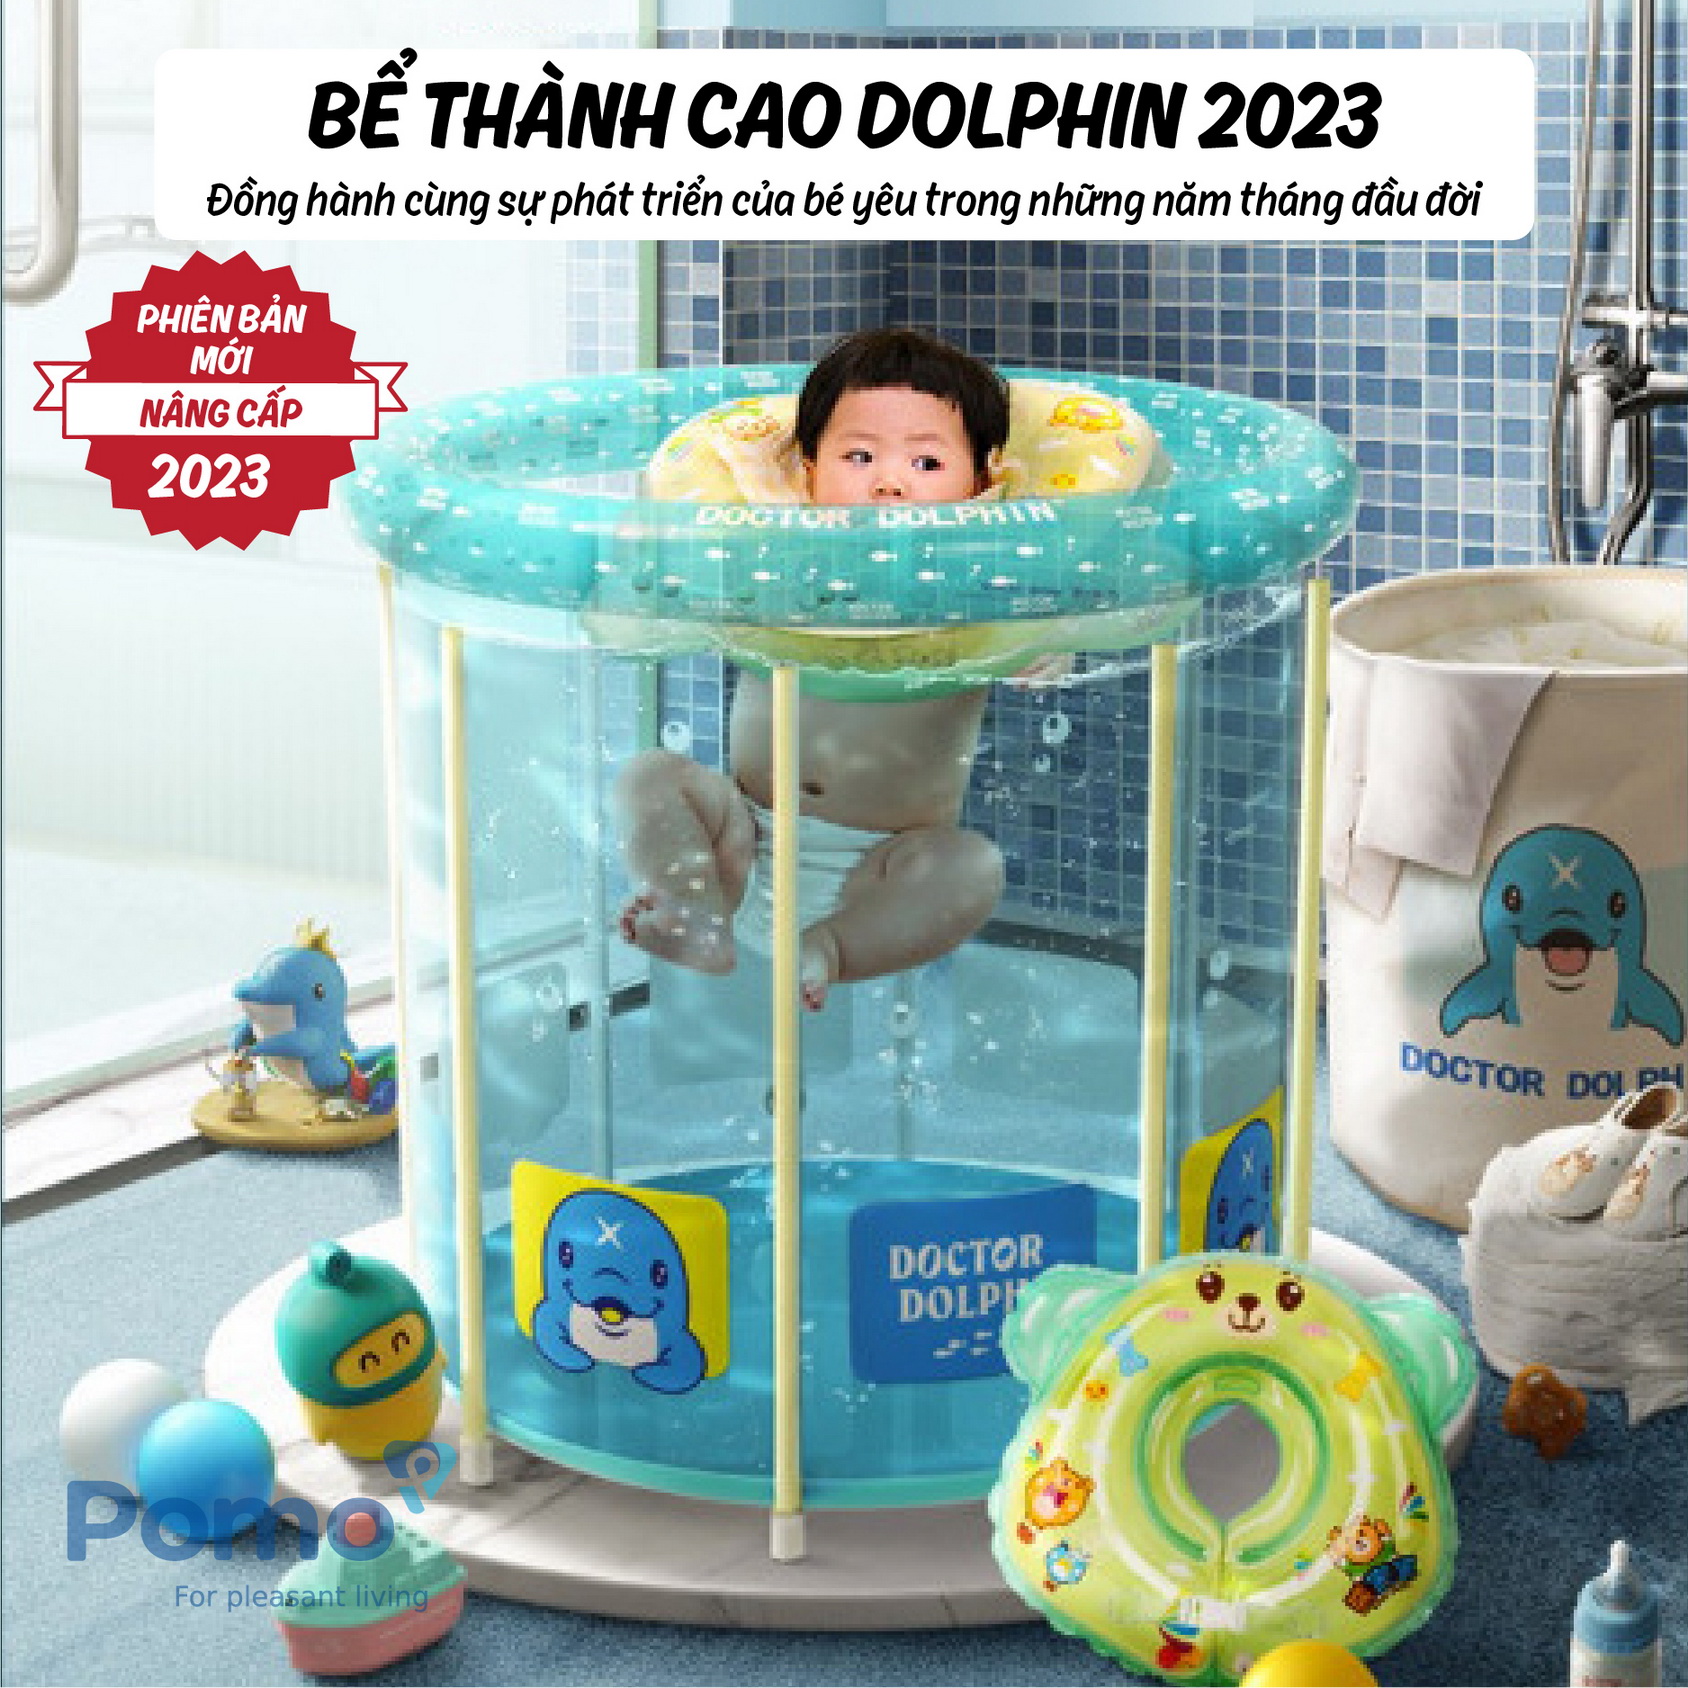 Bể bơi thành cao Umoo Doctor Dolphin 2023 80x80cm bản nâng cấp